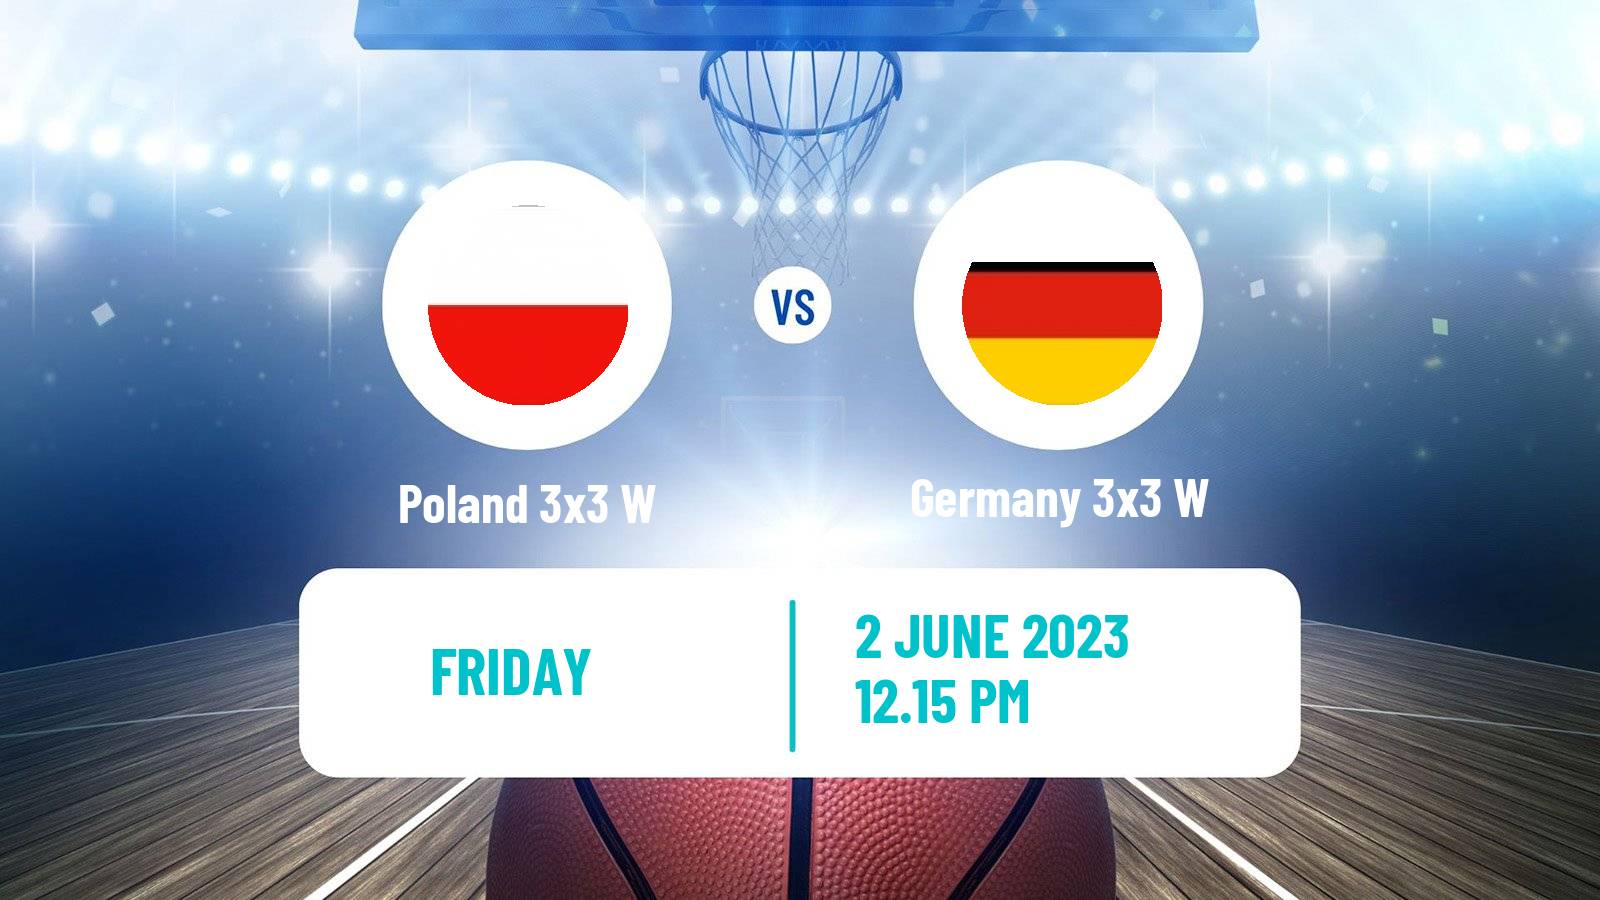 Basketball World Cup Basketball 3x3 Women Poland 3x3 W - Germany 3x3 W